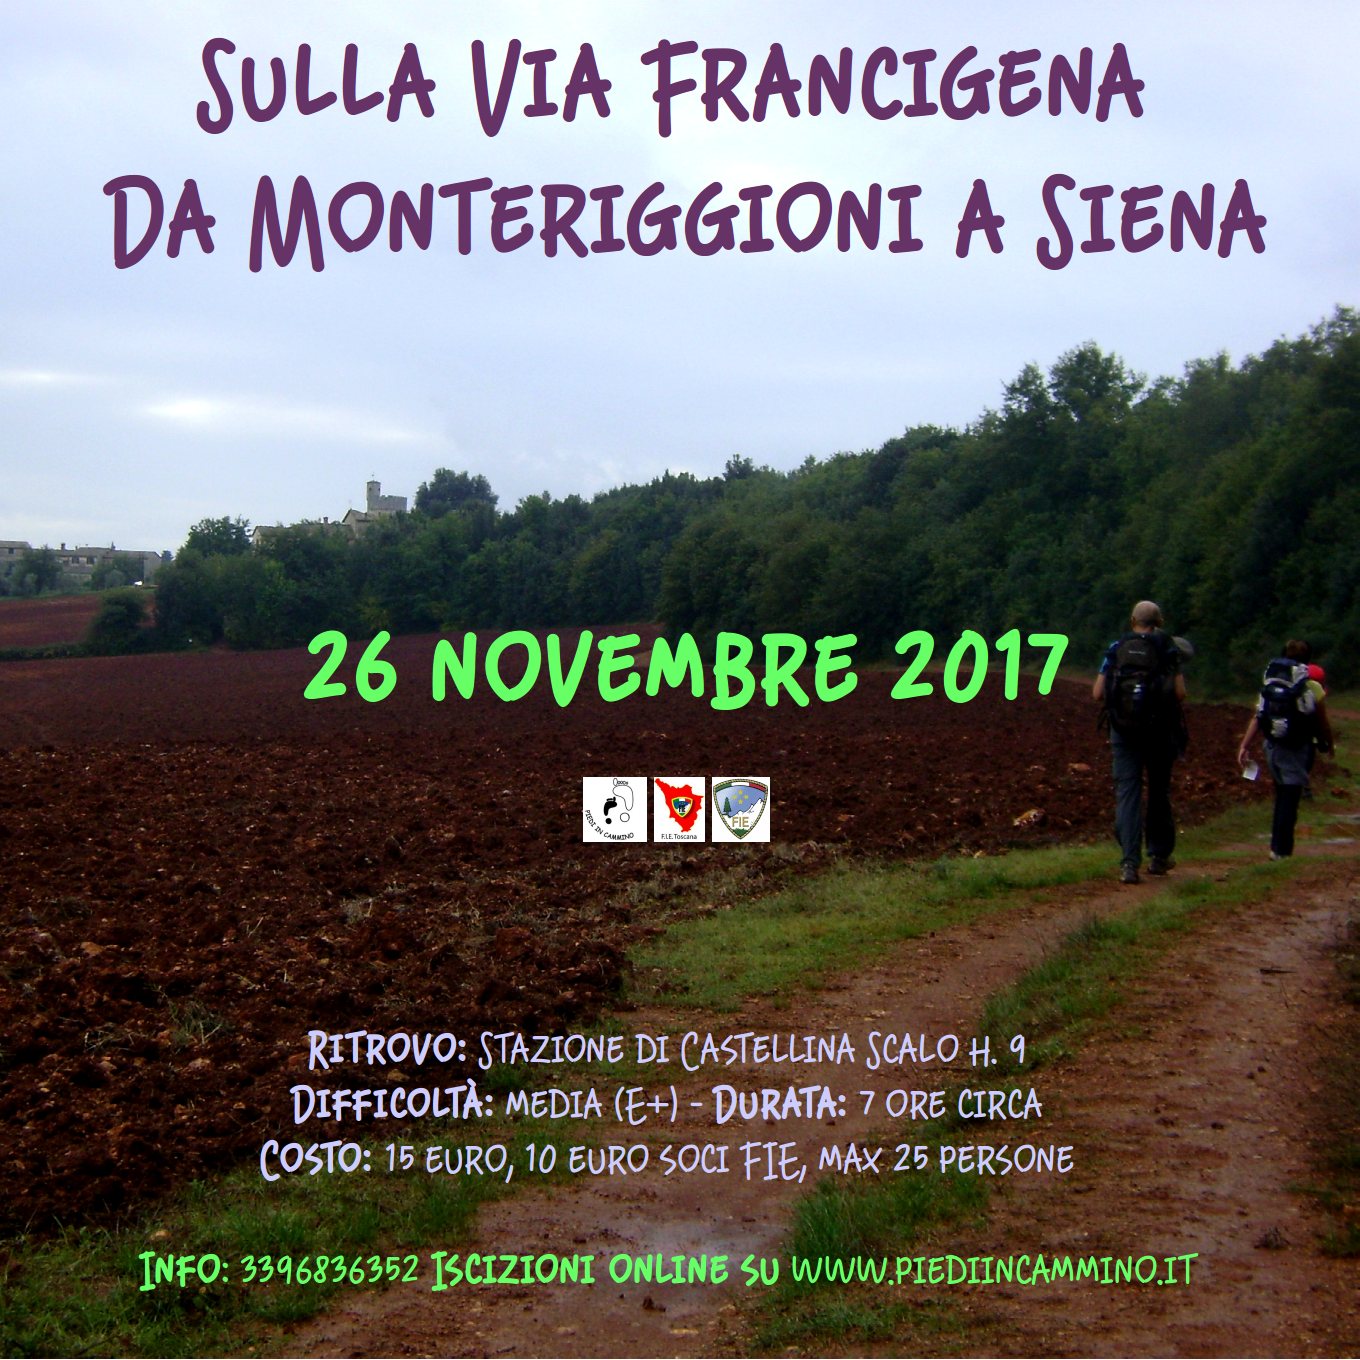 Domenica 26 novembre sulla Via Francigena da Monteriggioni a Siena con Piedi in Cammino